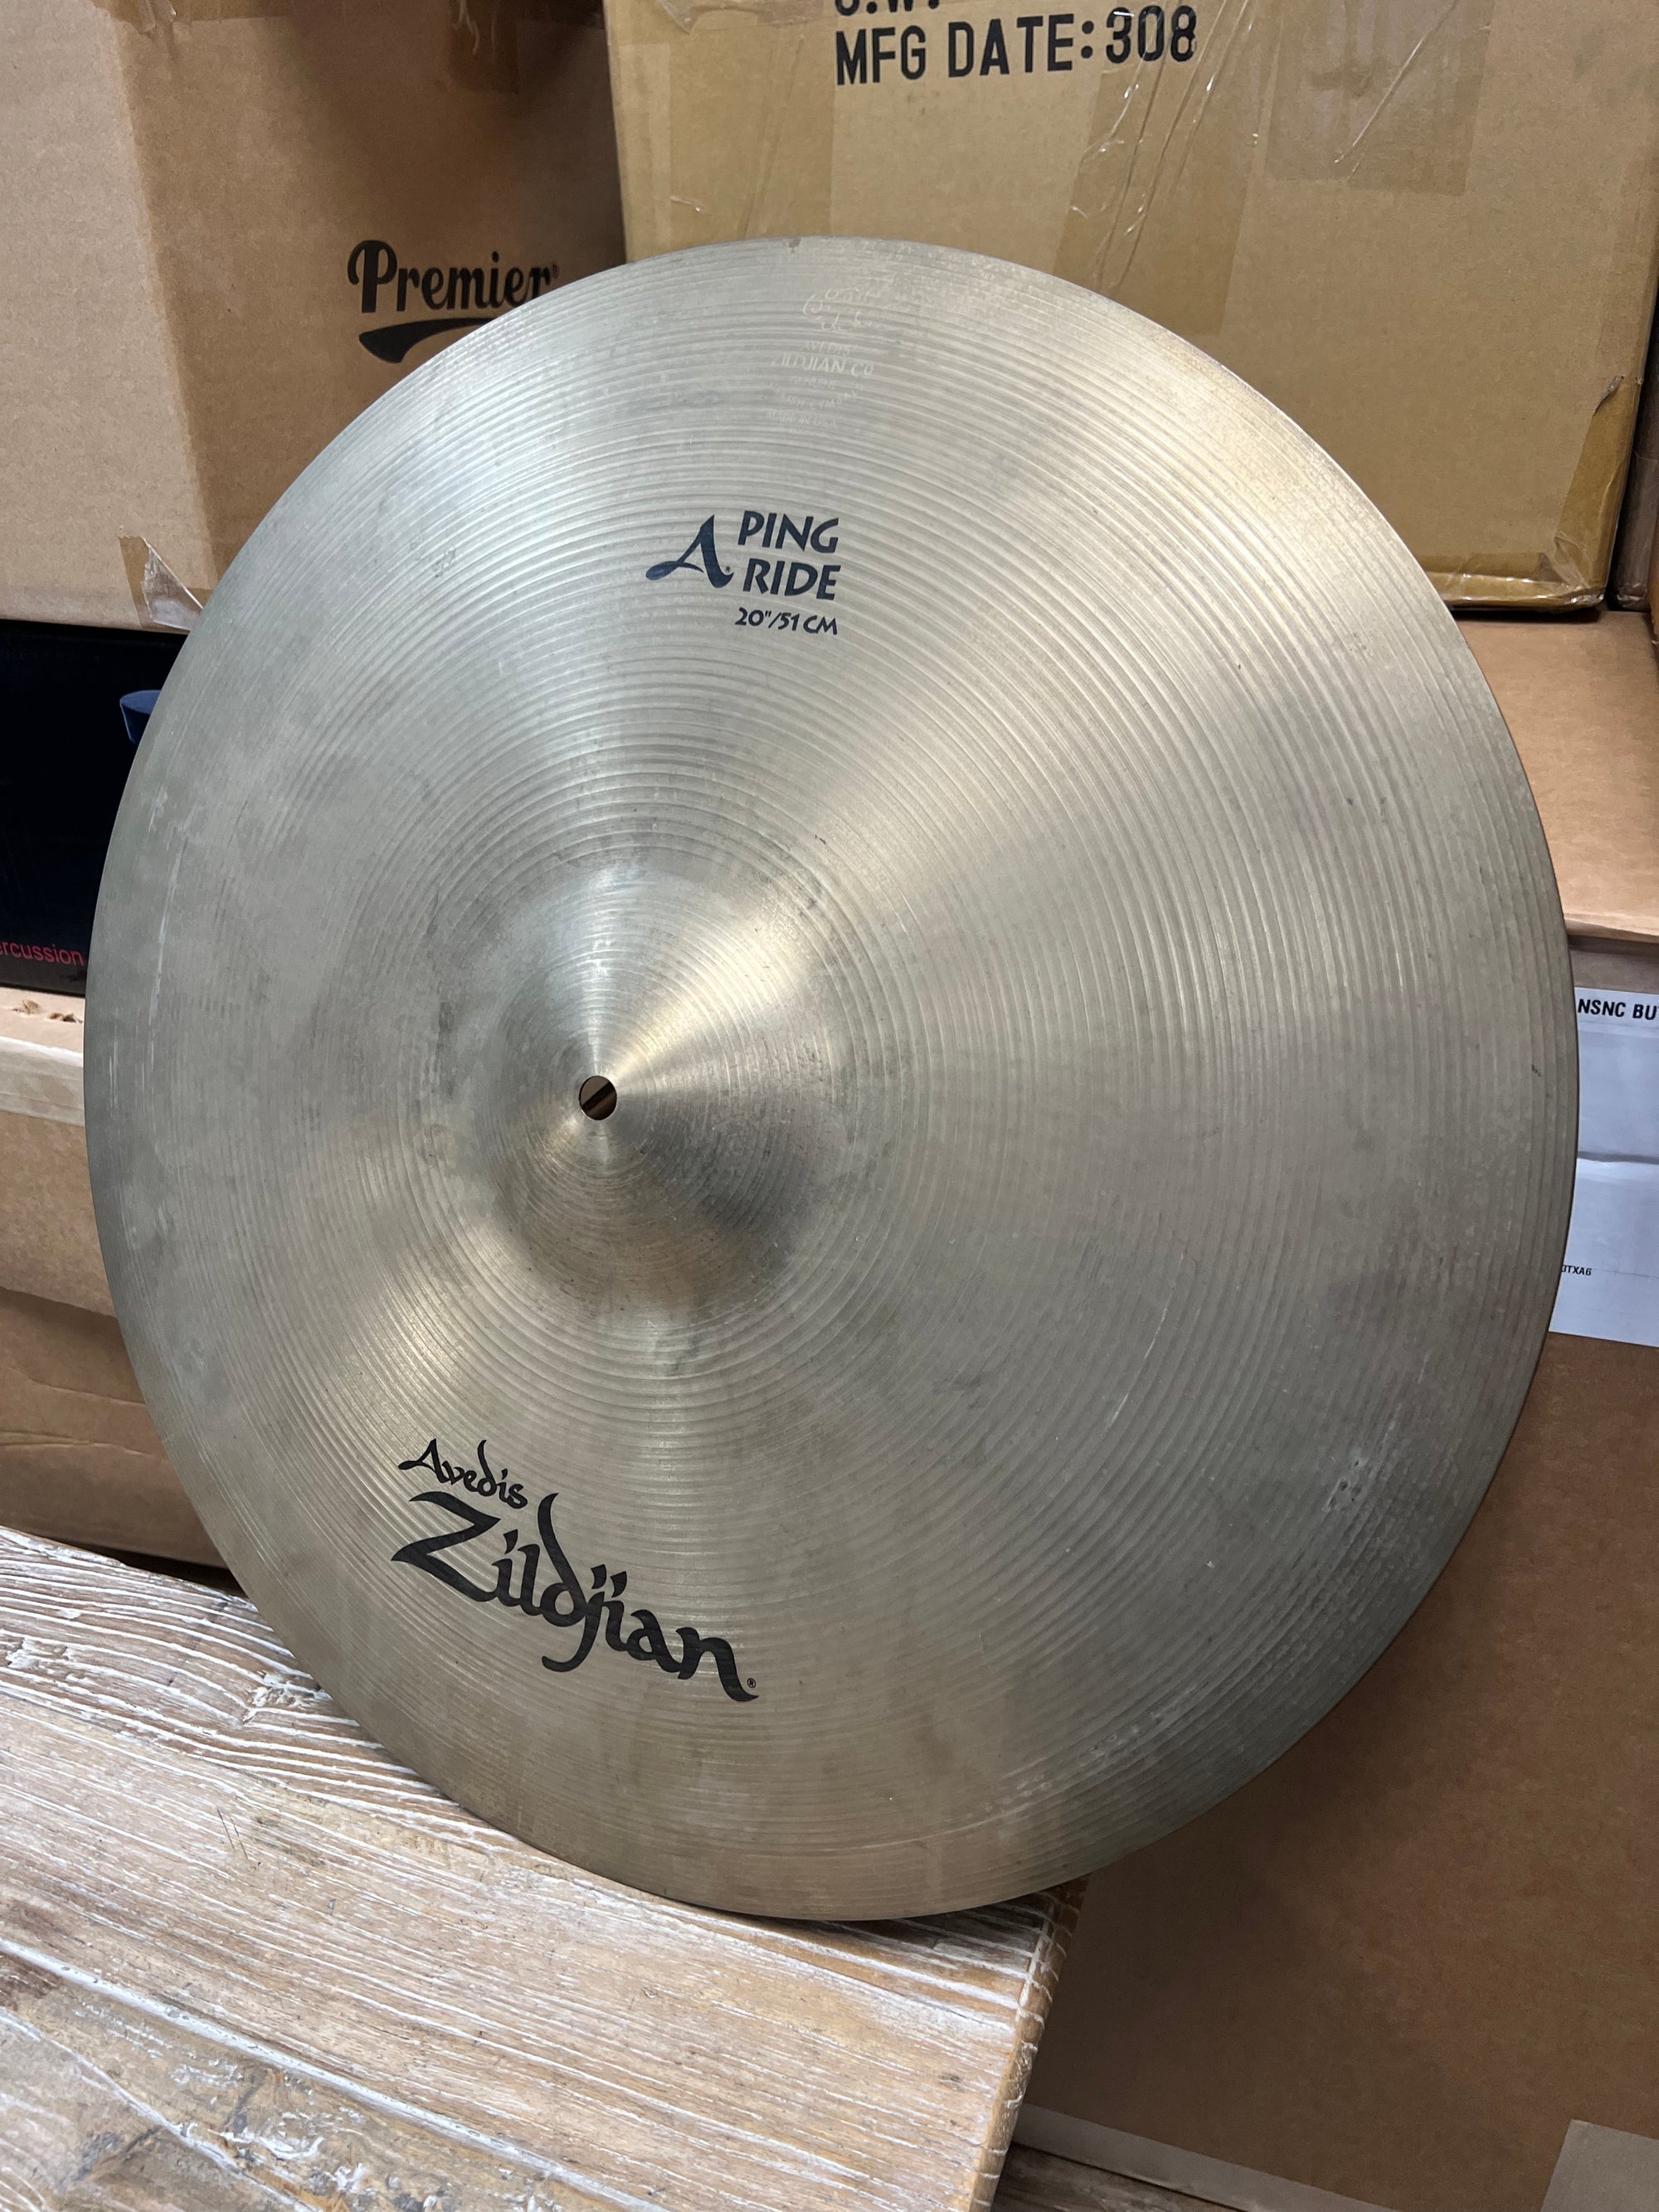 Zildjian 20” A Ping Ride